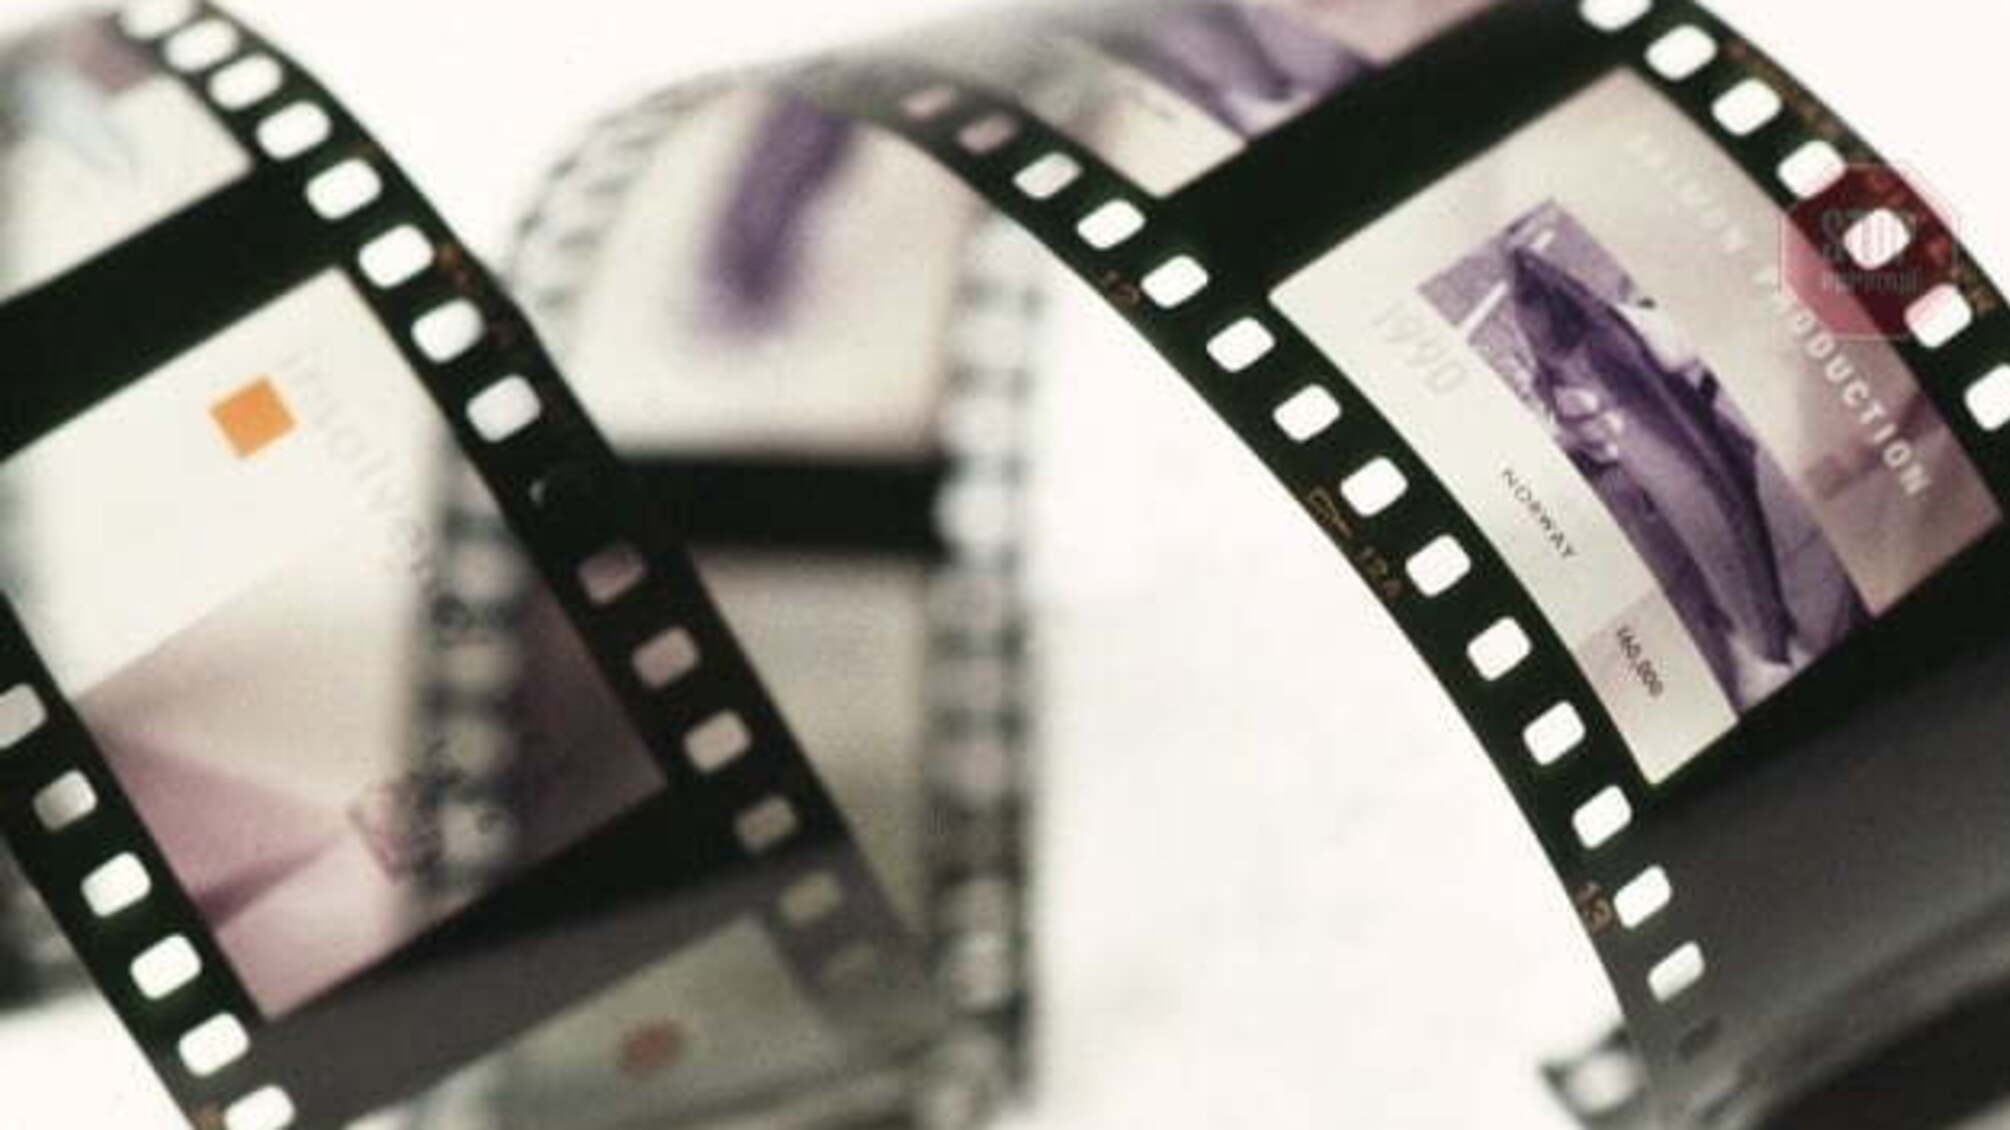 Уряд змінив порядок використання коштів для підтримки кіно